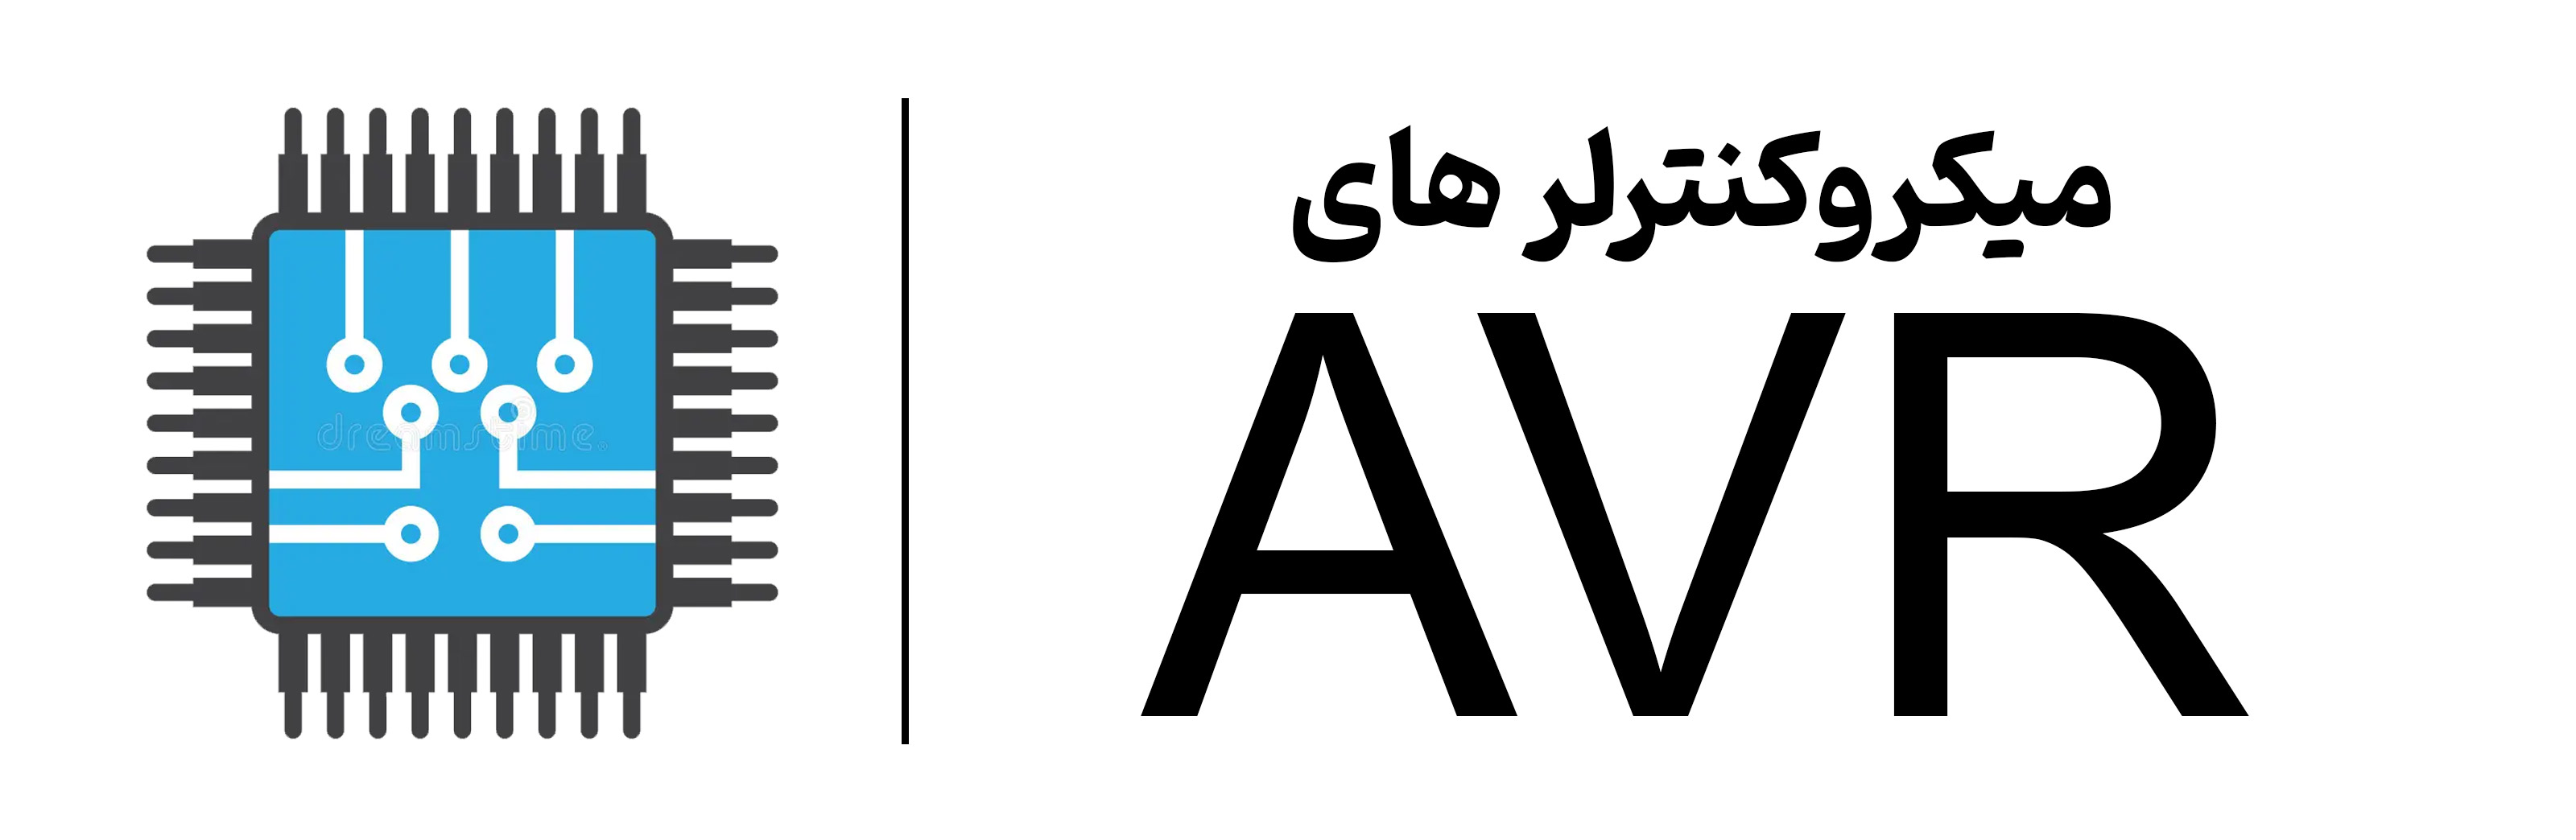 آموزش AVR در آموزشگاه مهرگان اصفهان